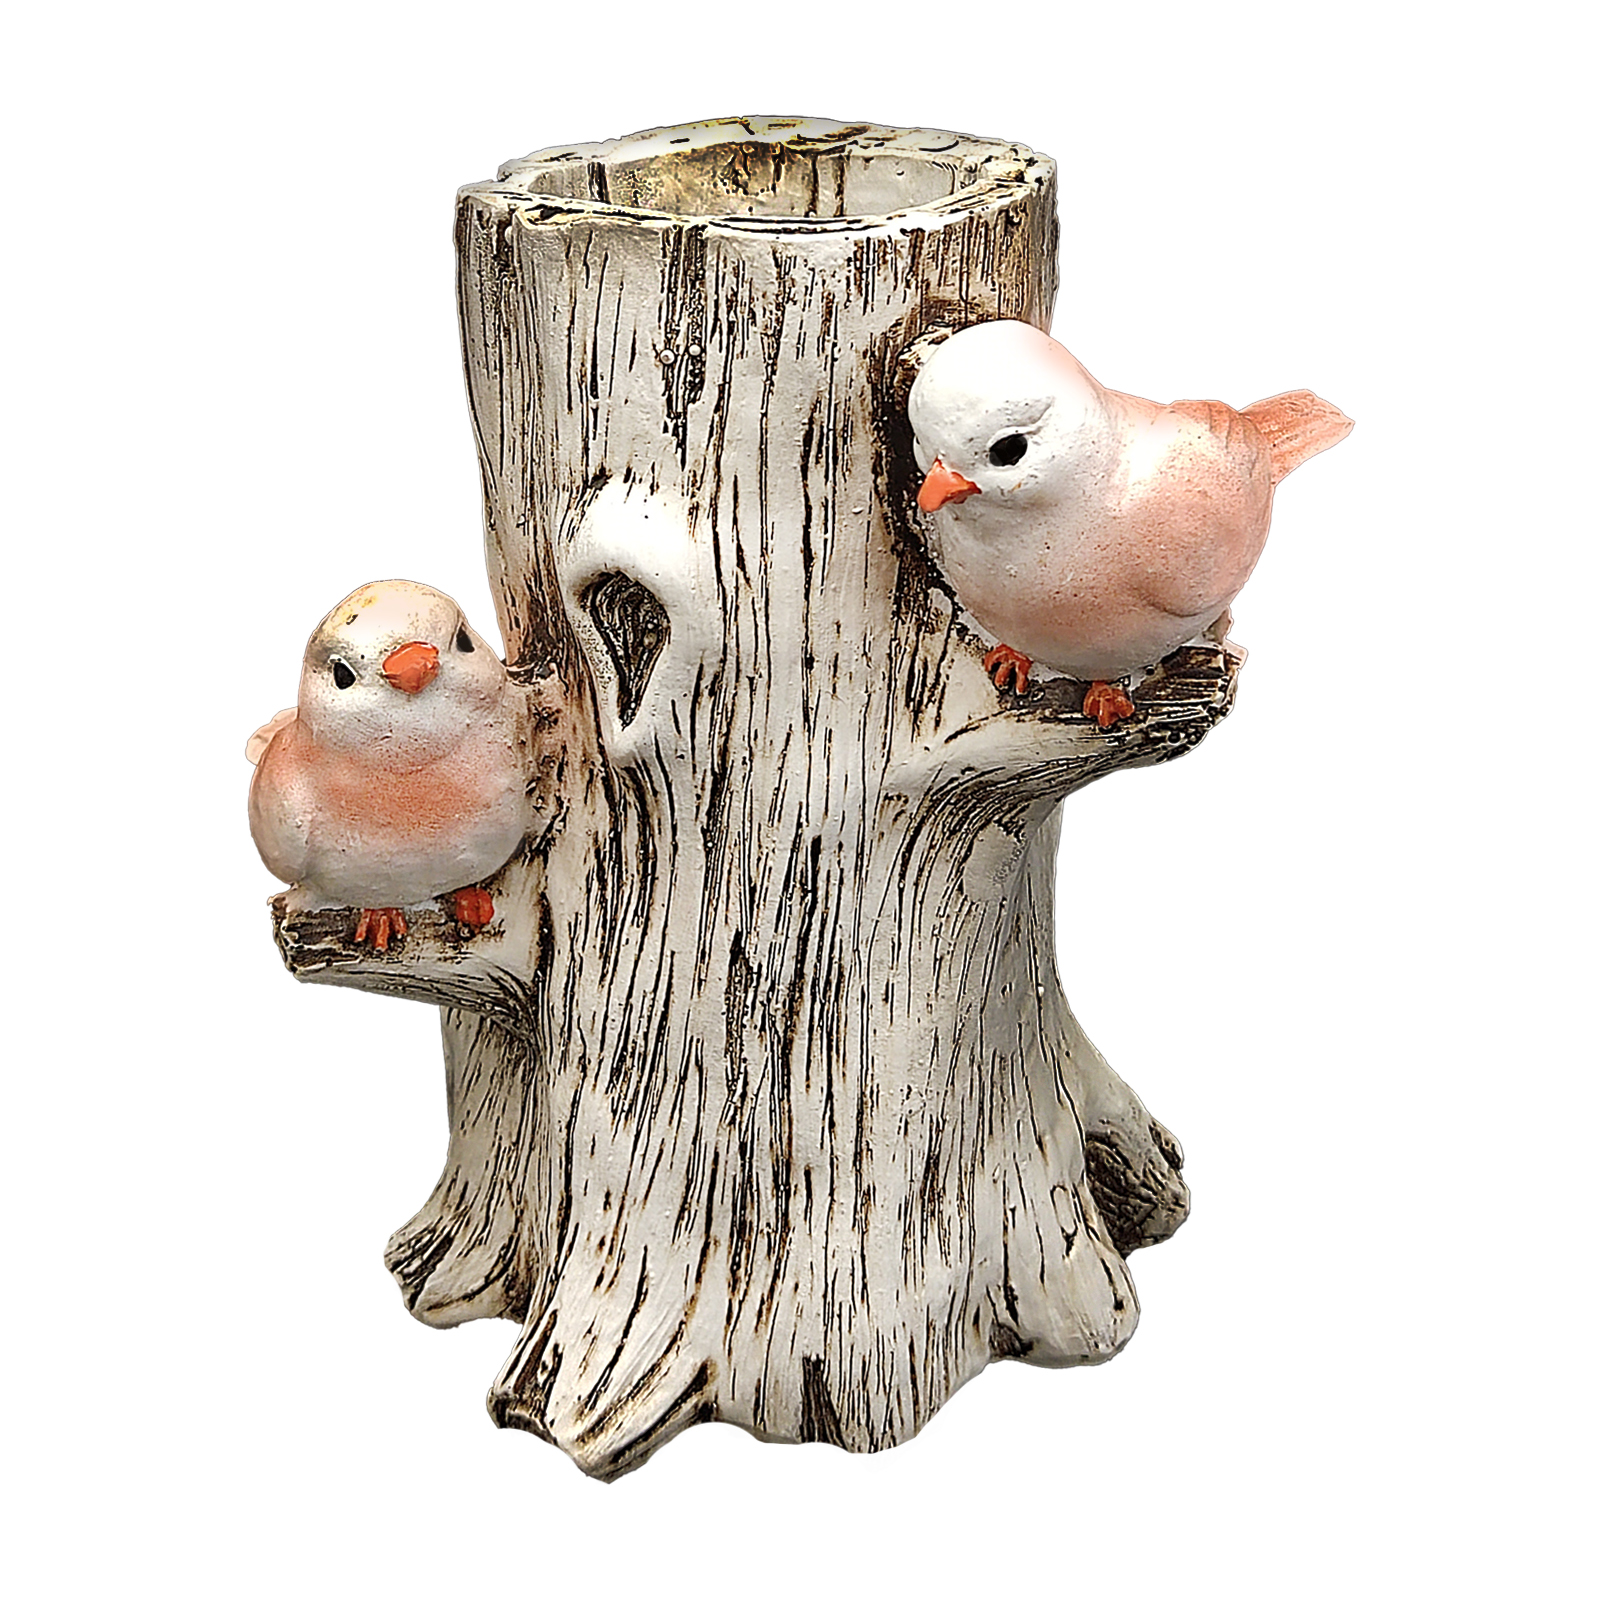 جامدادی رومیزی مدل کنده درختی با دو کبوتر بر روی شاخه کد 1402